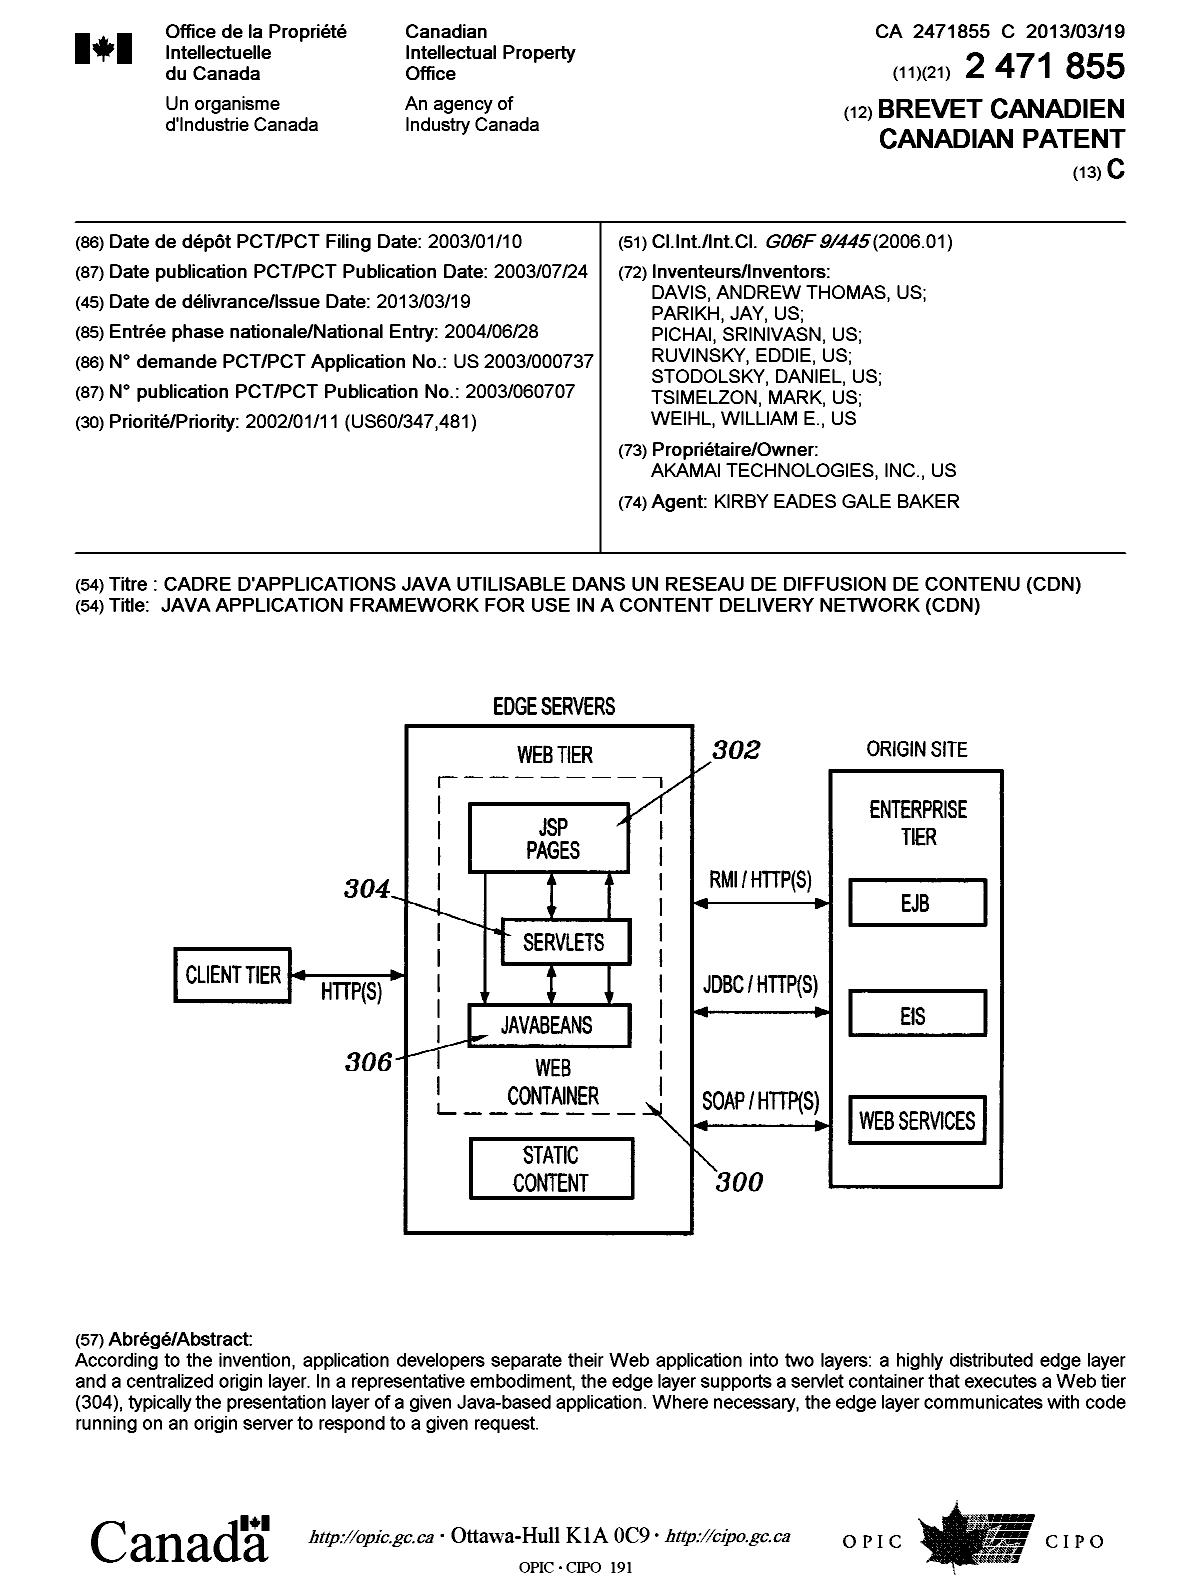 Document de brevet canadien 2471855. Page couverture 20130218. Image 1 de 1